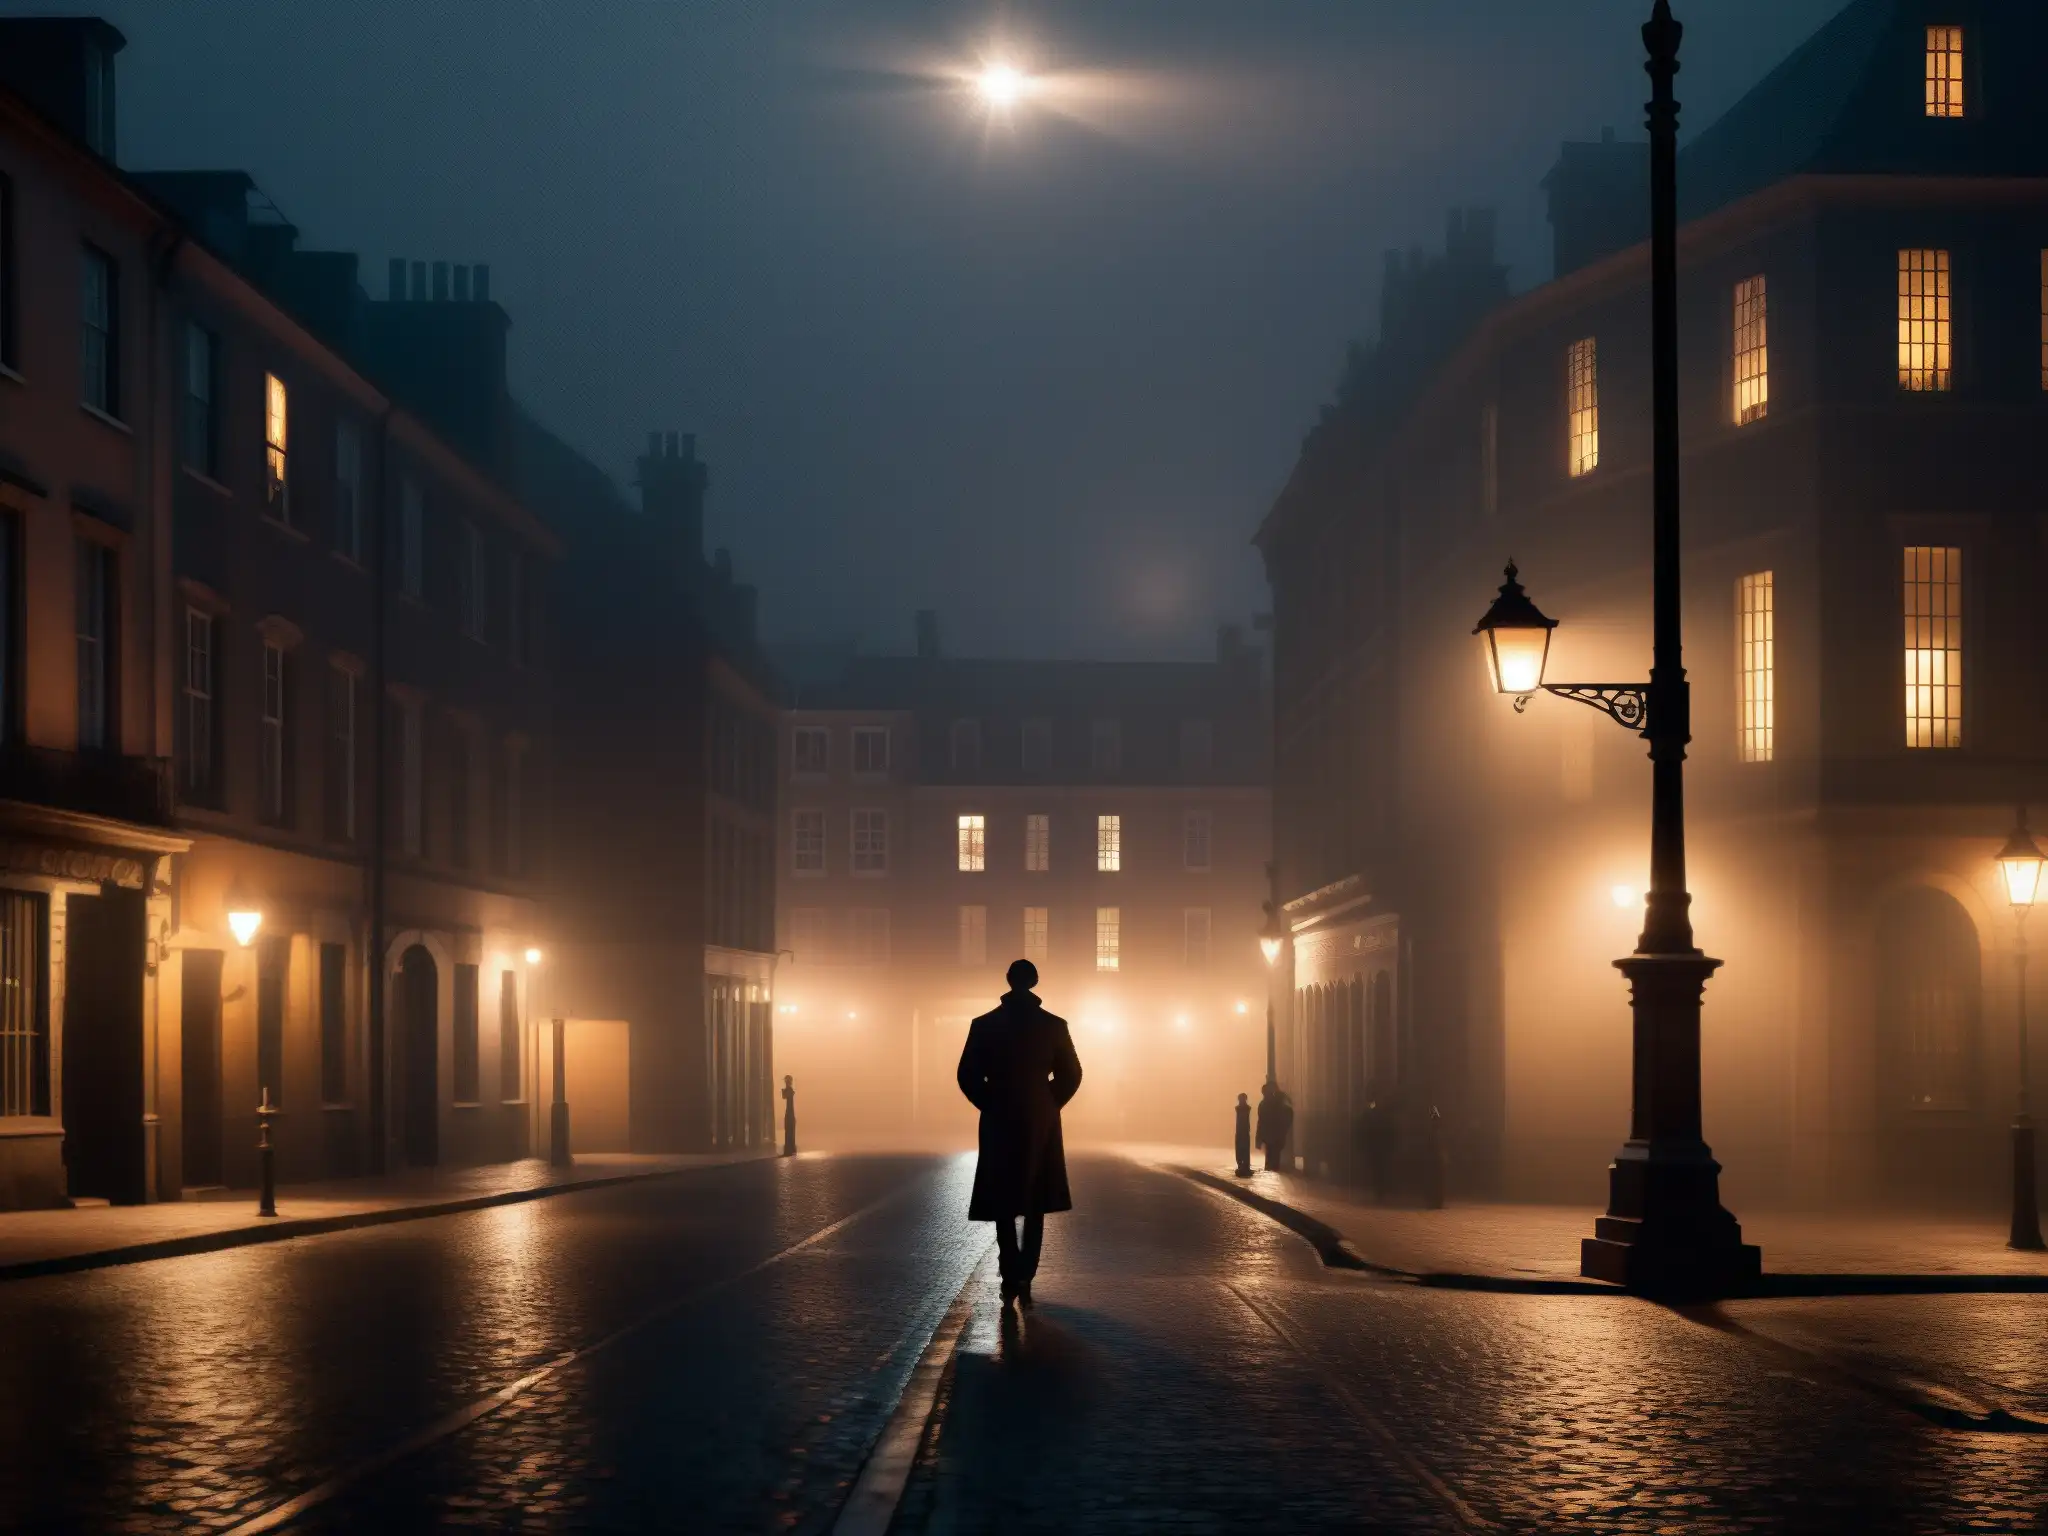 Sombra misteriosa bajo la luz de la calle, inquietante escena nocturna con impacto psicológico, leyendas urbanas asesinas